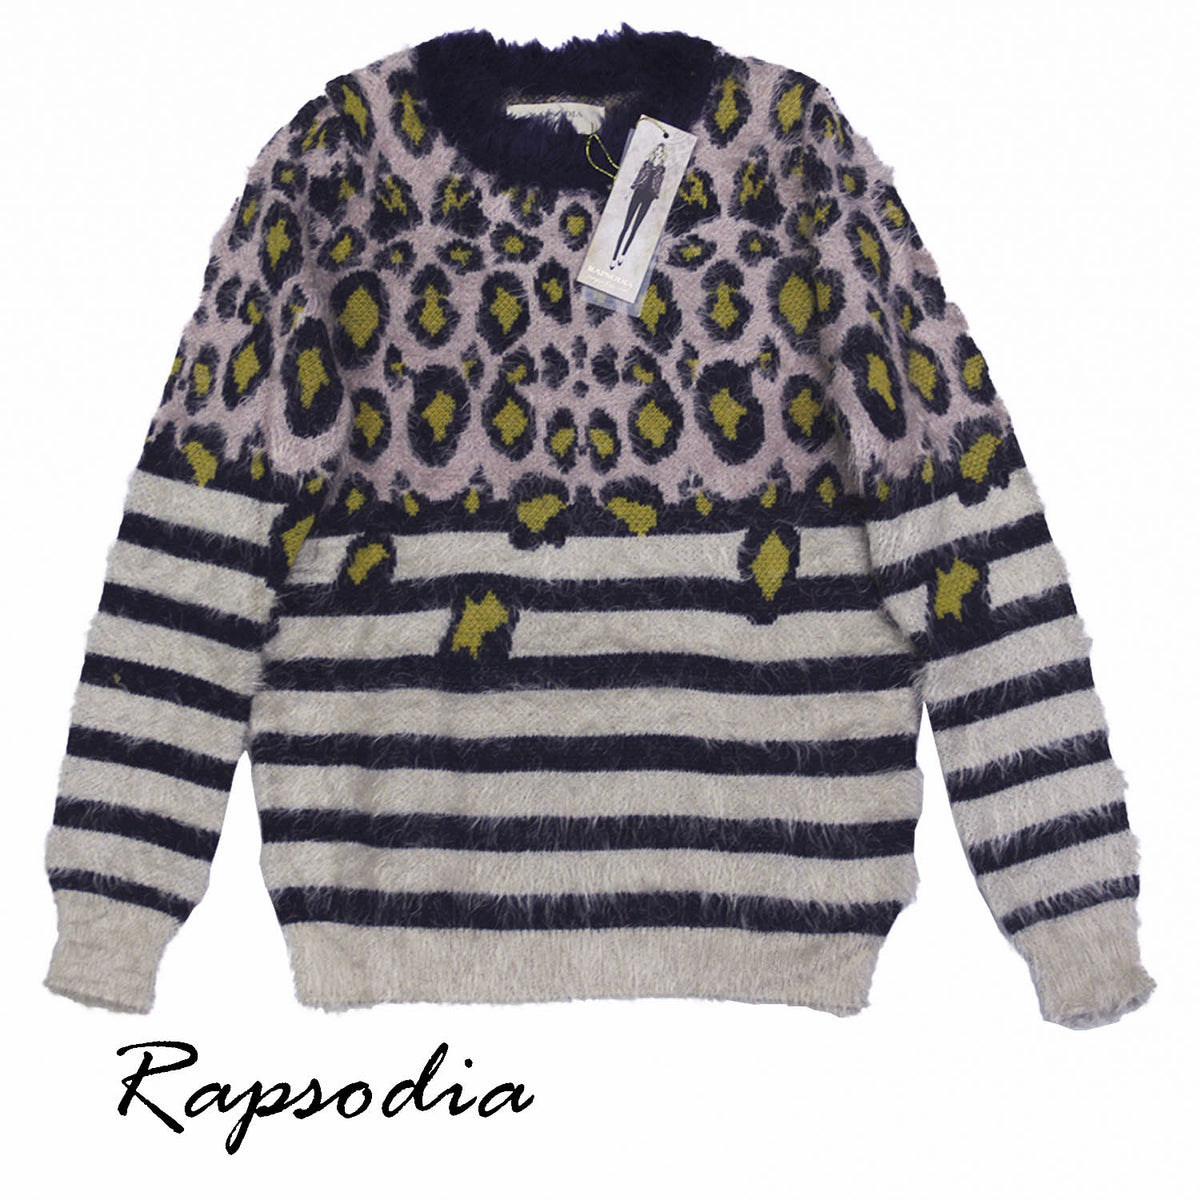 Sweater Rapsodia Diogenes Rosa